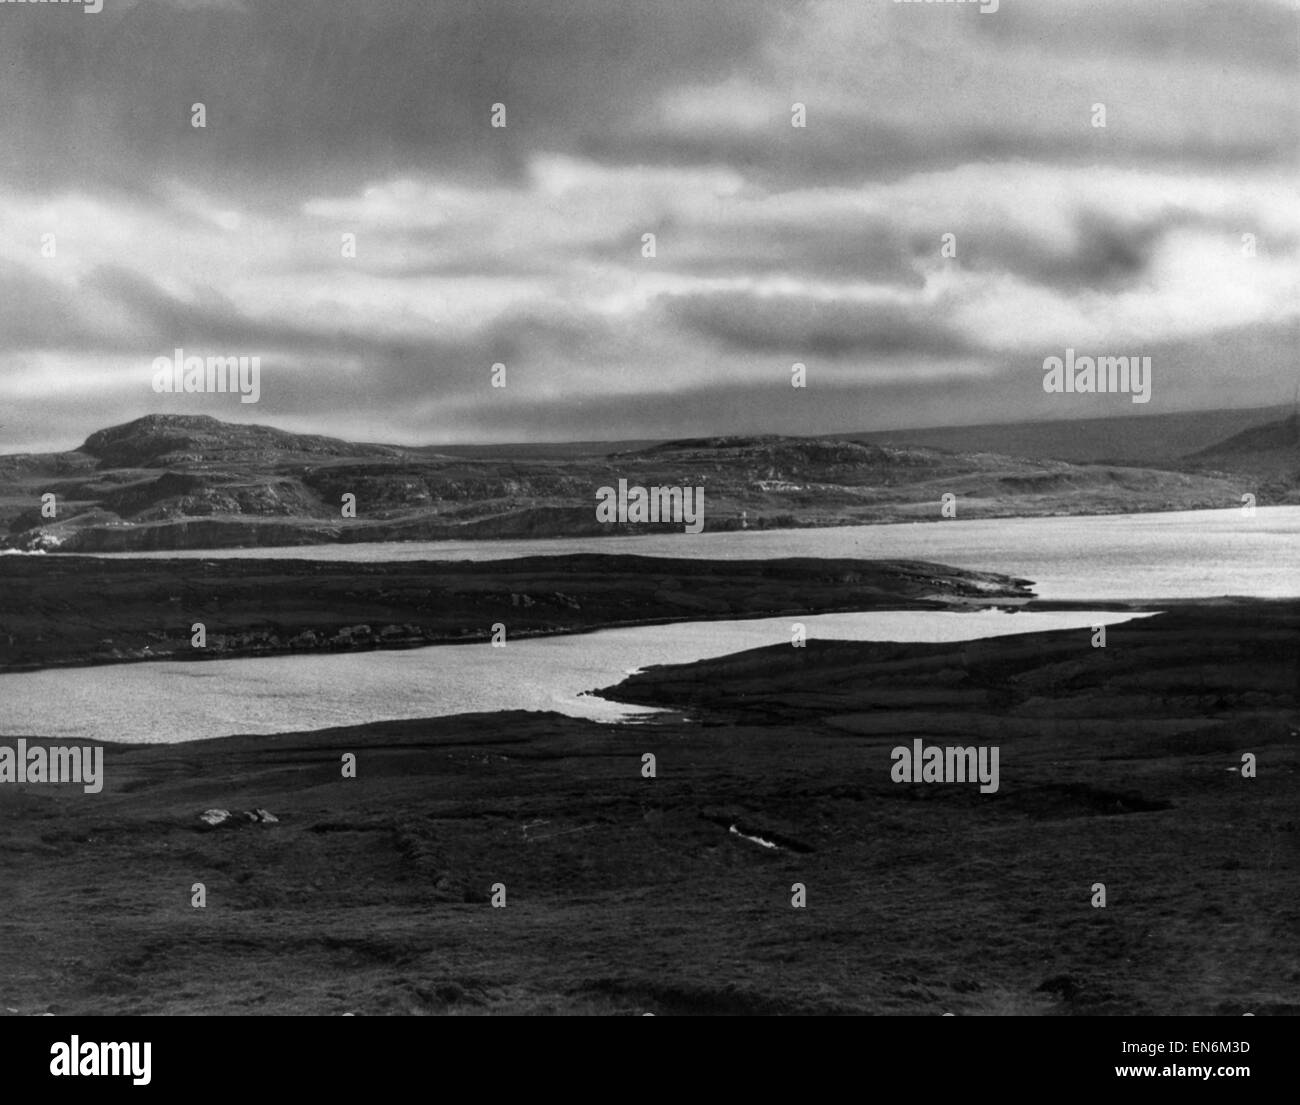 Nuages de tempête de recueillir au-dessus du Loch Eriboll, un loch de mer sur la côte nord de l'Ecosse. Vers 1930. Banque D'Images